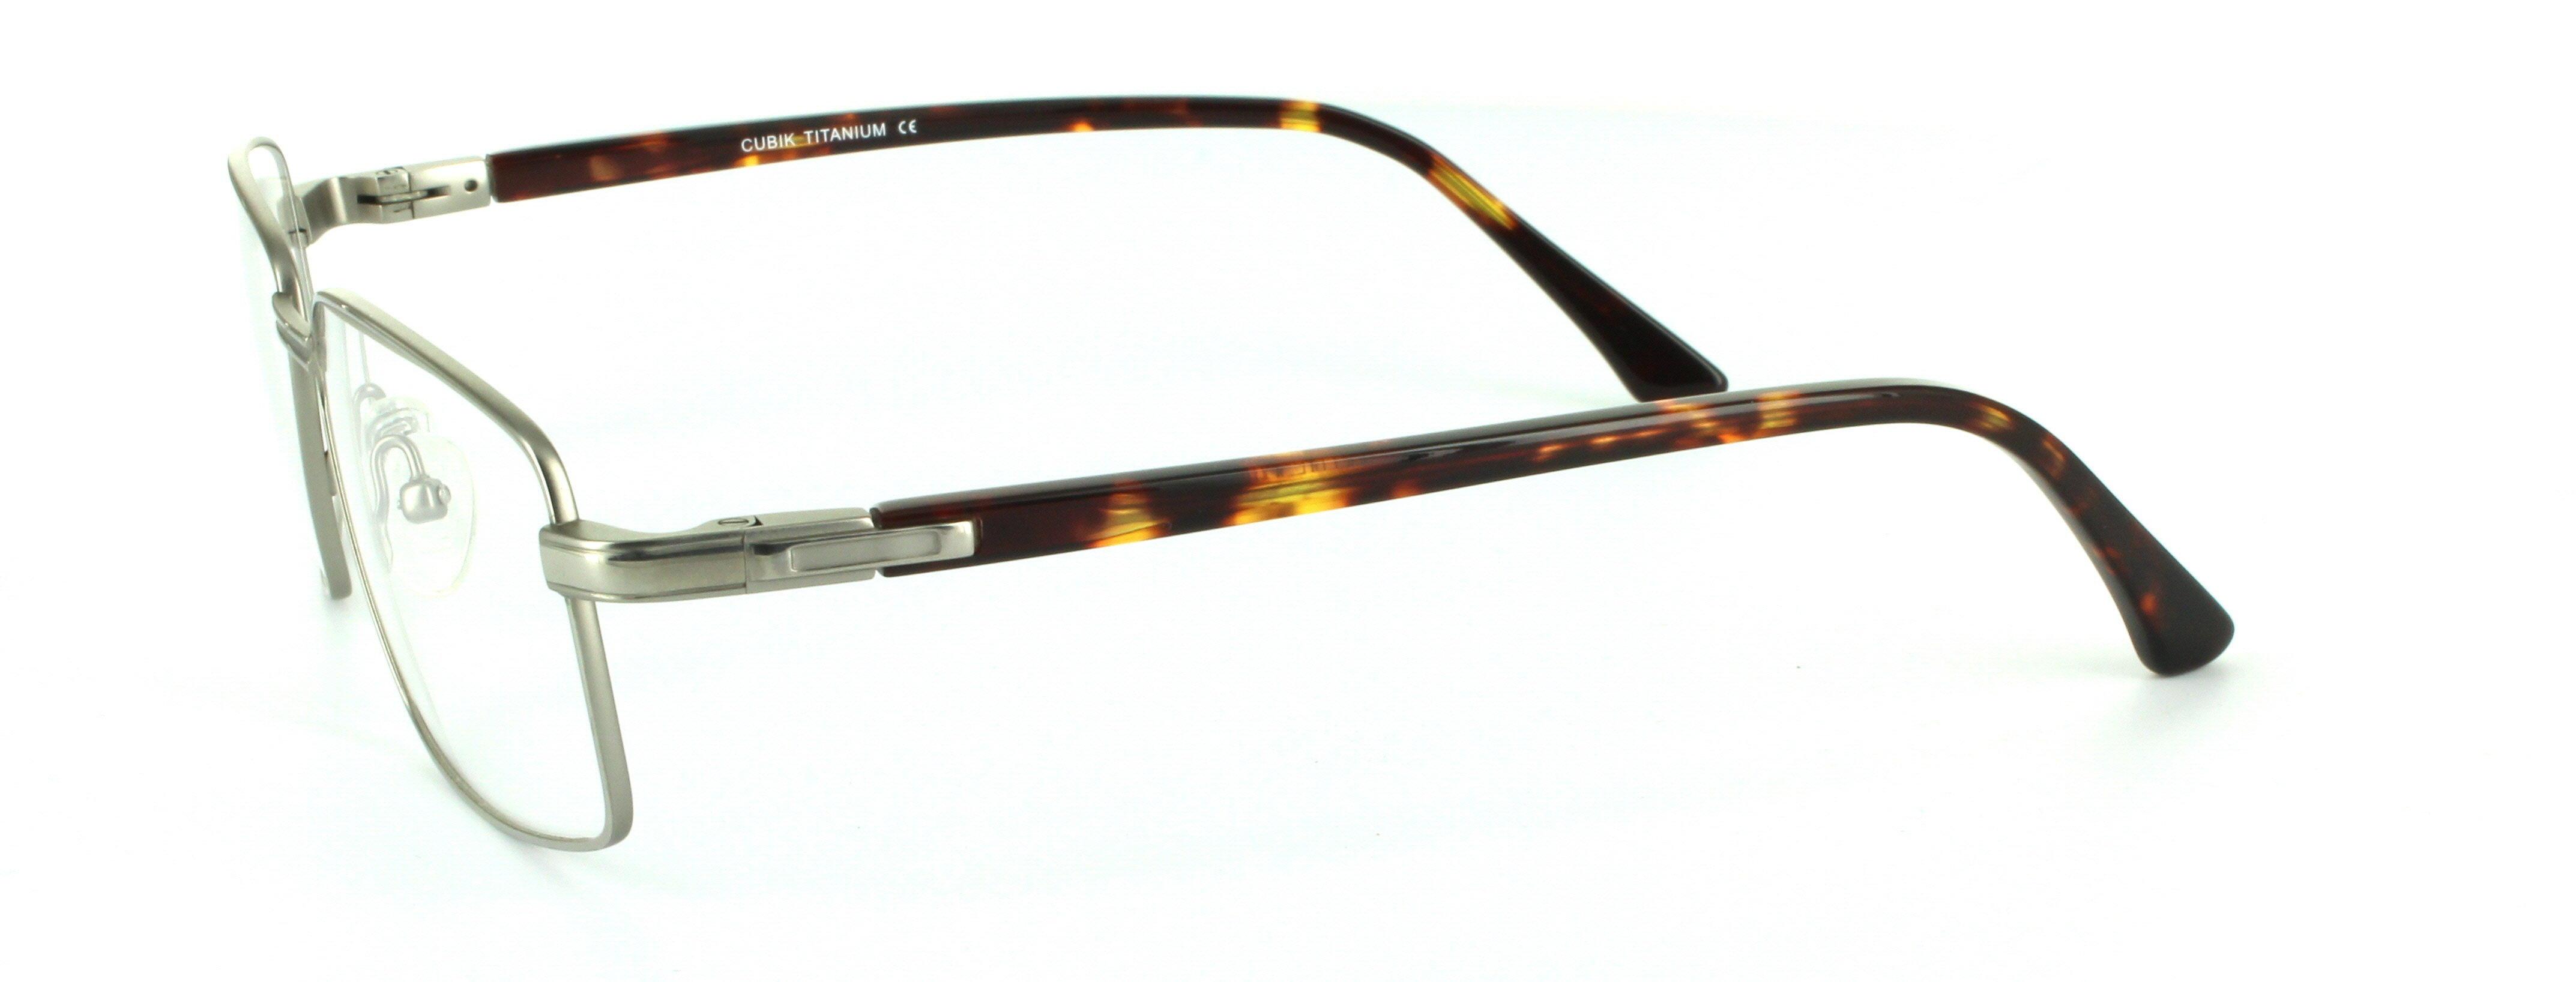 Silver Full Rim Rectangular Titanium Glasses Terry - Image View 2